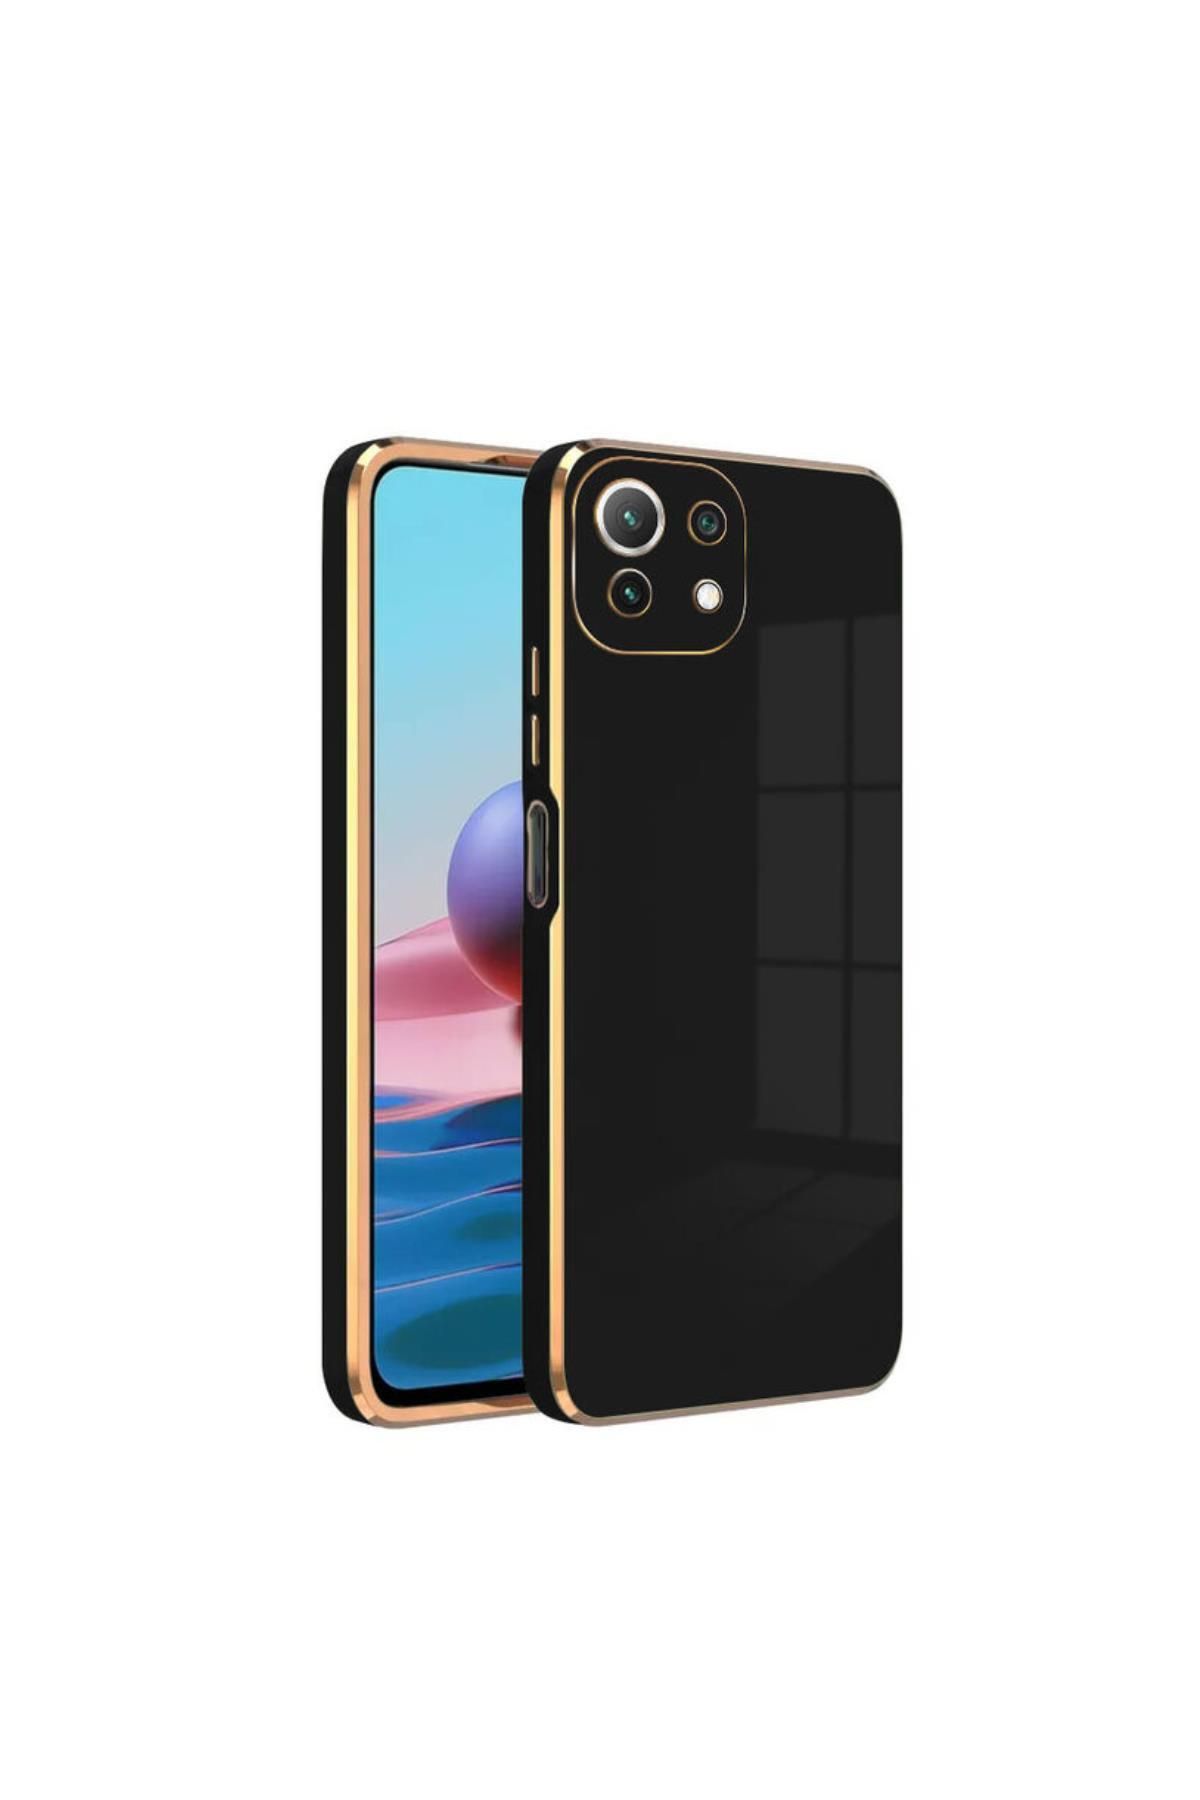 Zebana Xiaomi Mi 11 Lite Uyumlu Kılıf Golden Silikon Kılıf Siyah